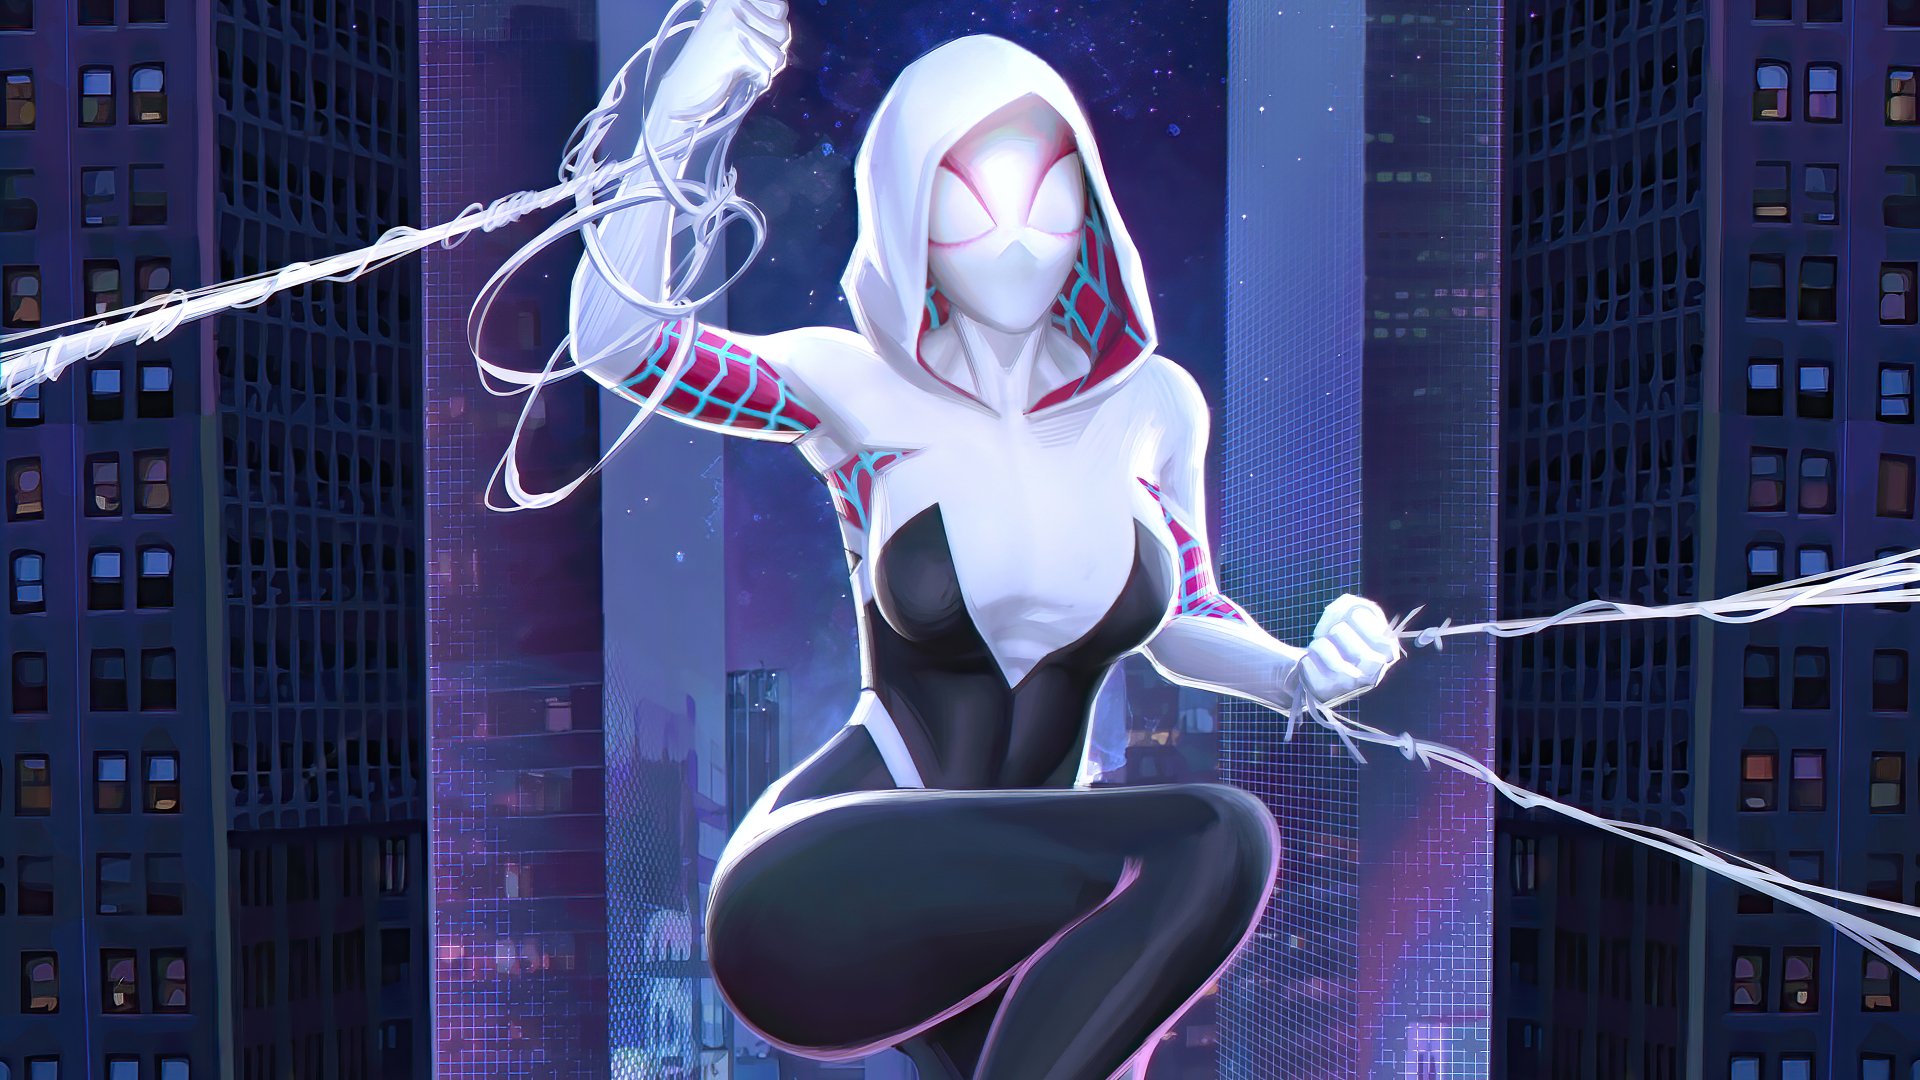 Spider-Gwen 4k Ultra HD Wallpaper by Naufal Amanda.